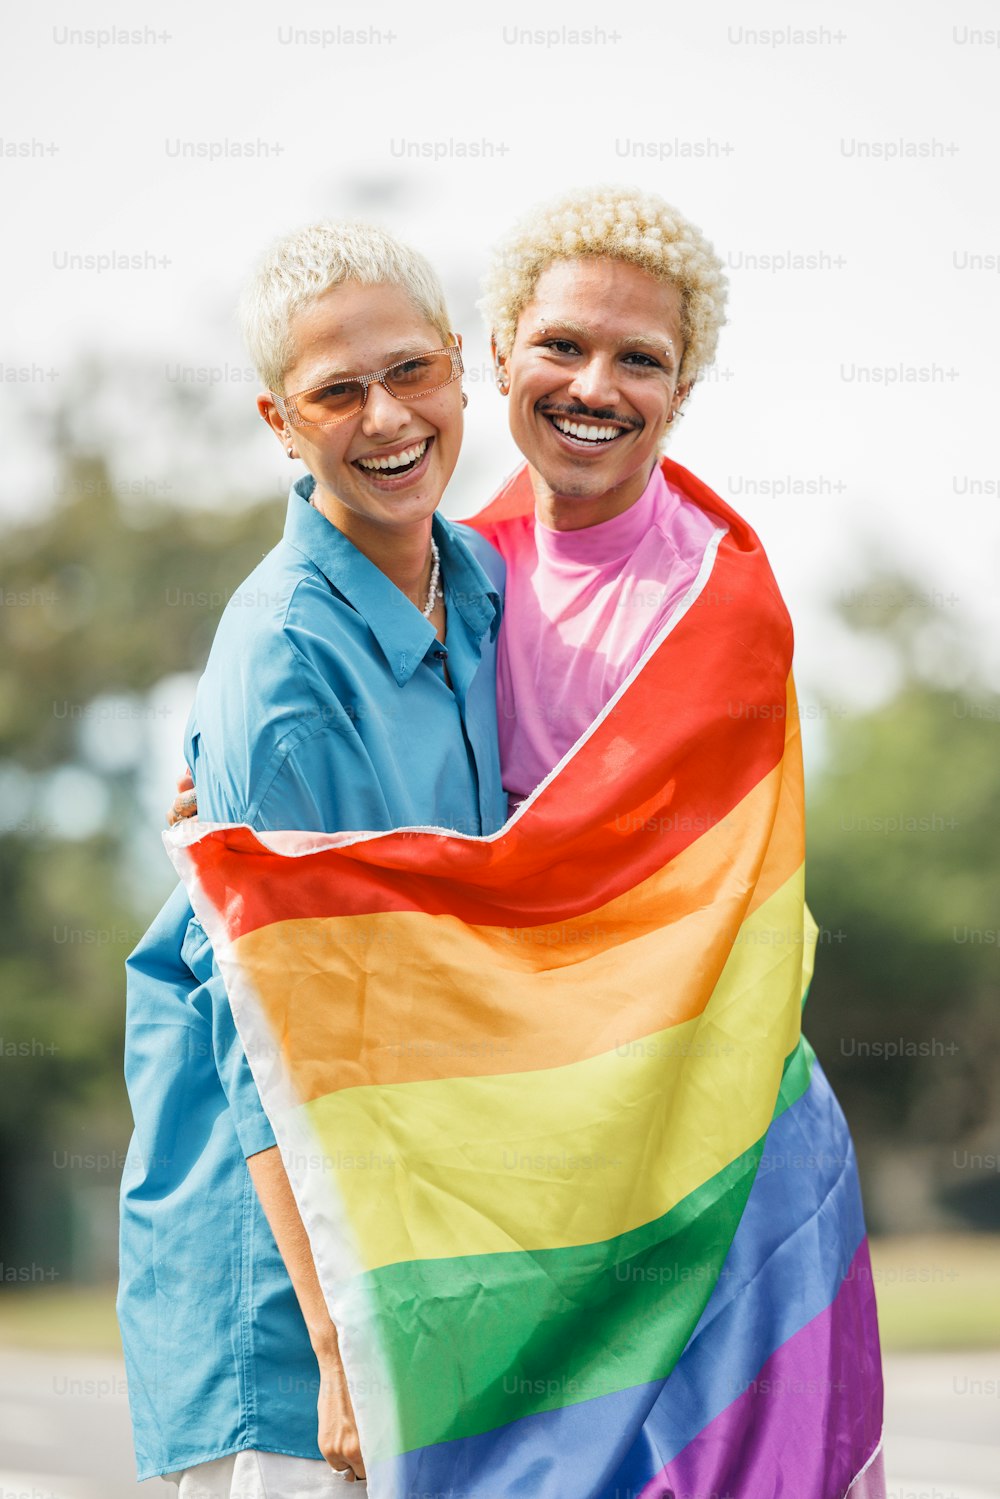 Un par de mujeres de pie una al lado de la otra sosteniendo una bandera arcoíris